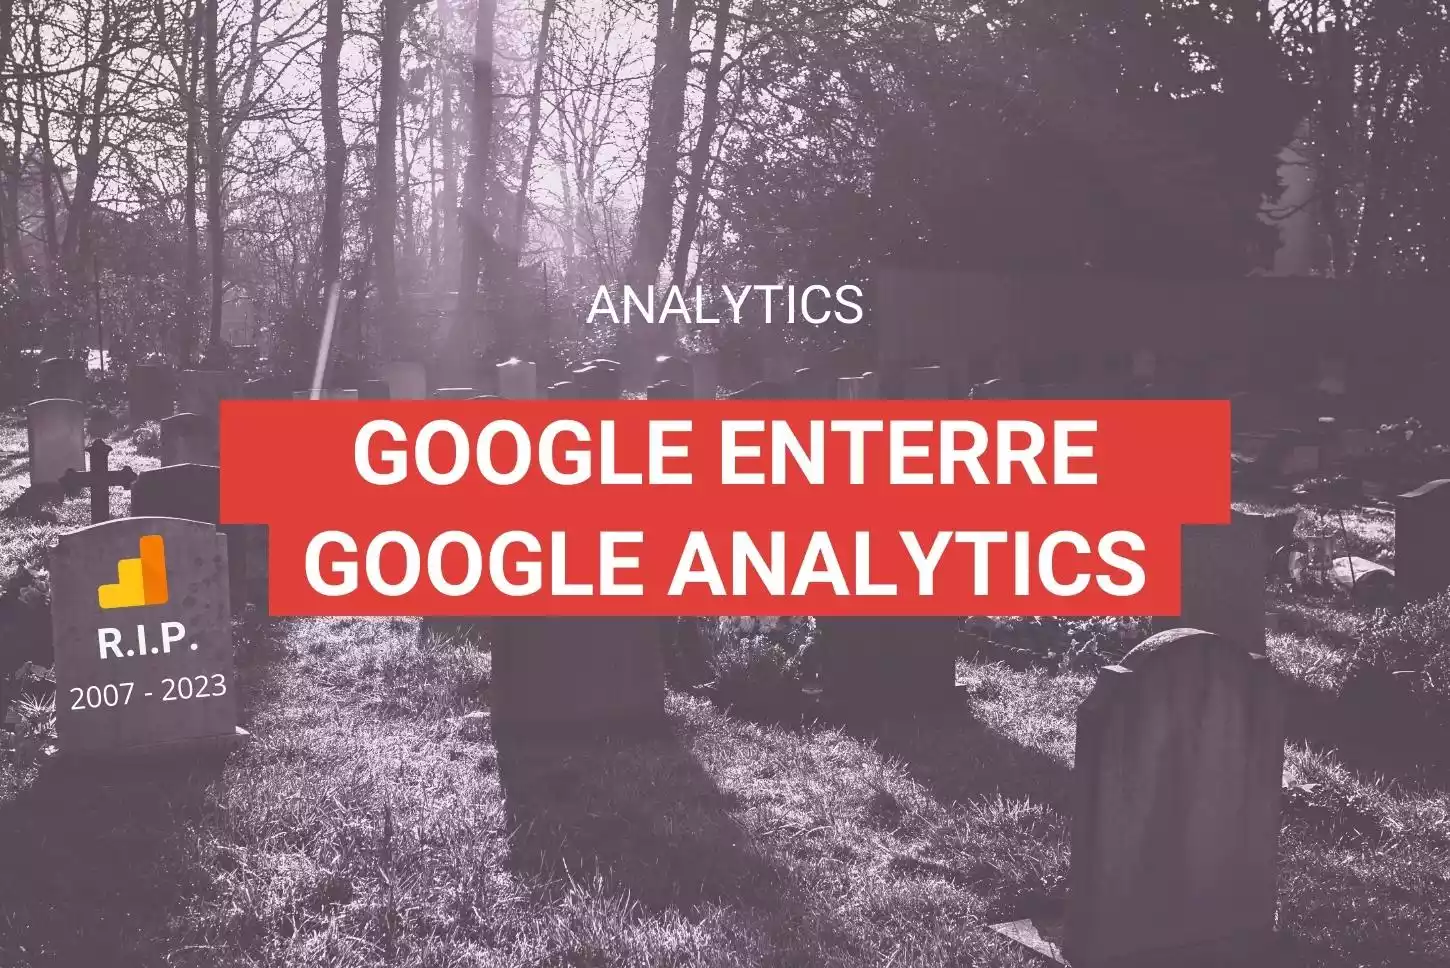 Google enterre Google analytics - Article de blog - Illustration cimetière avec pierre tombale